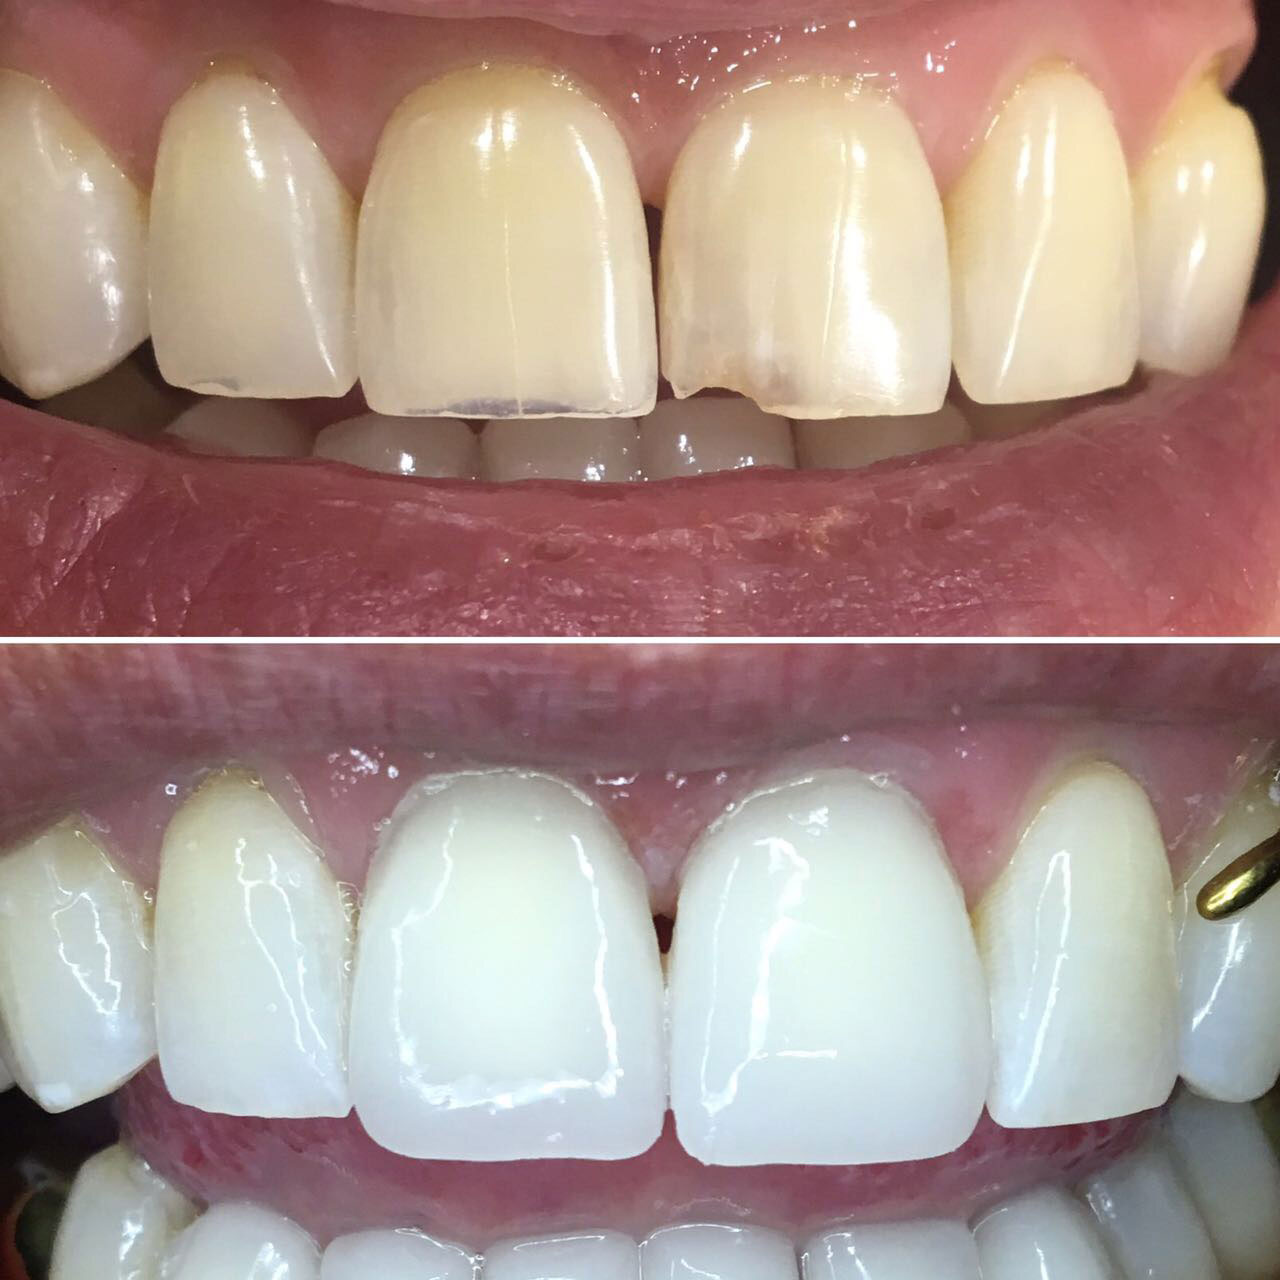 Фото: в эстетической стоматологии виниры исправляют значительные дефекты зубов